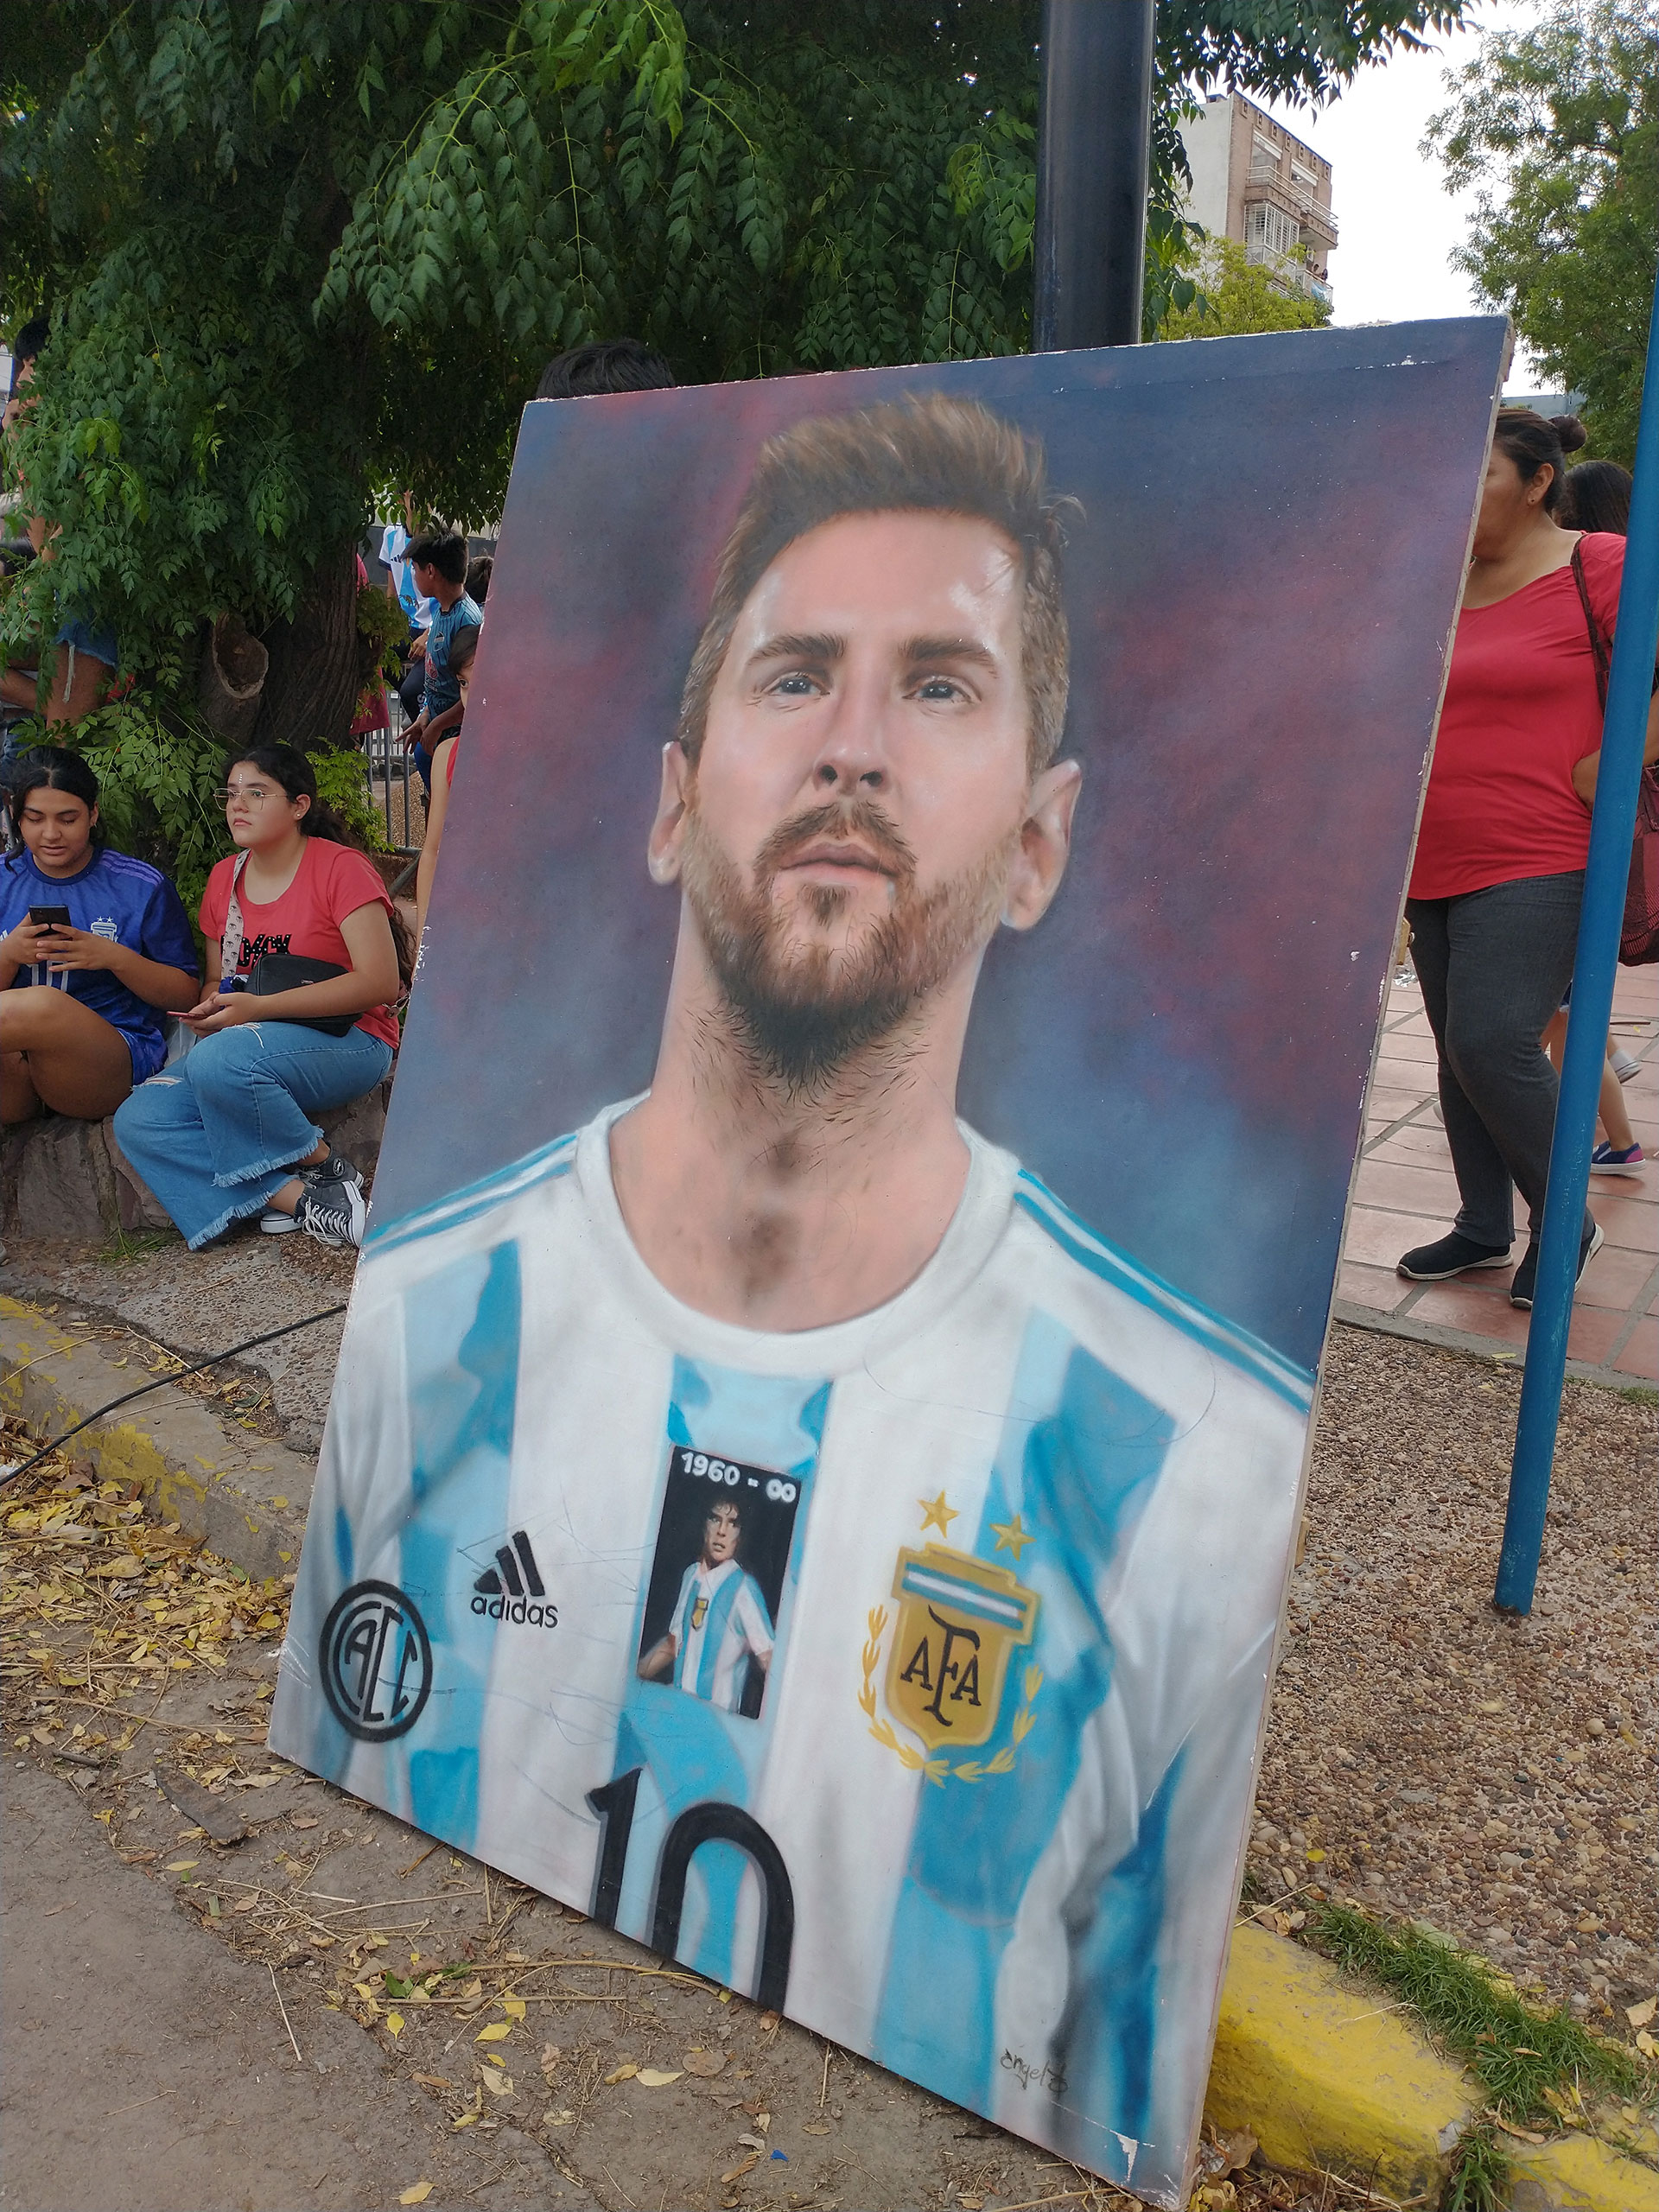 Los fans aguardan por Messi